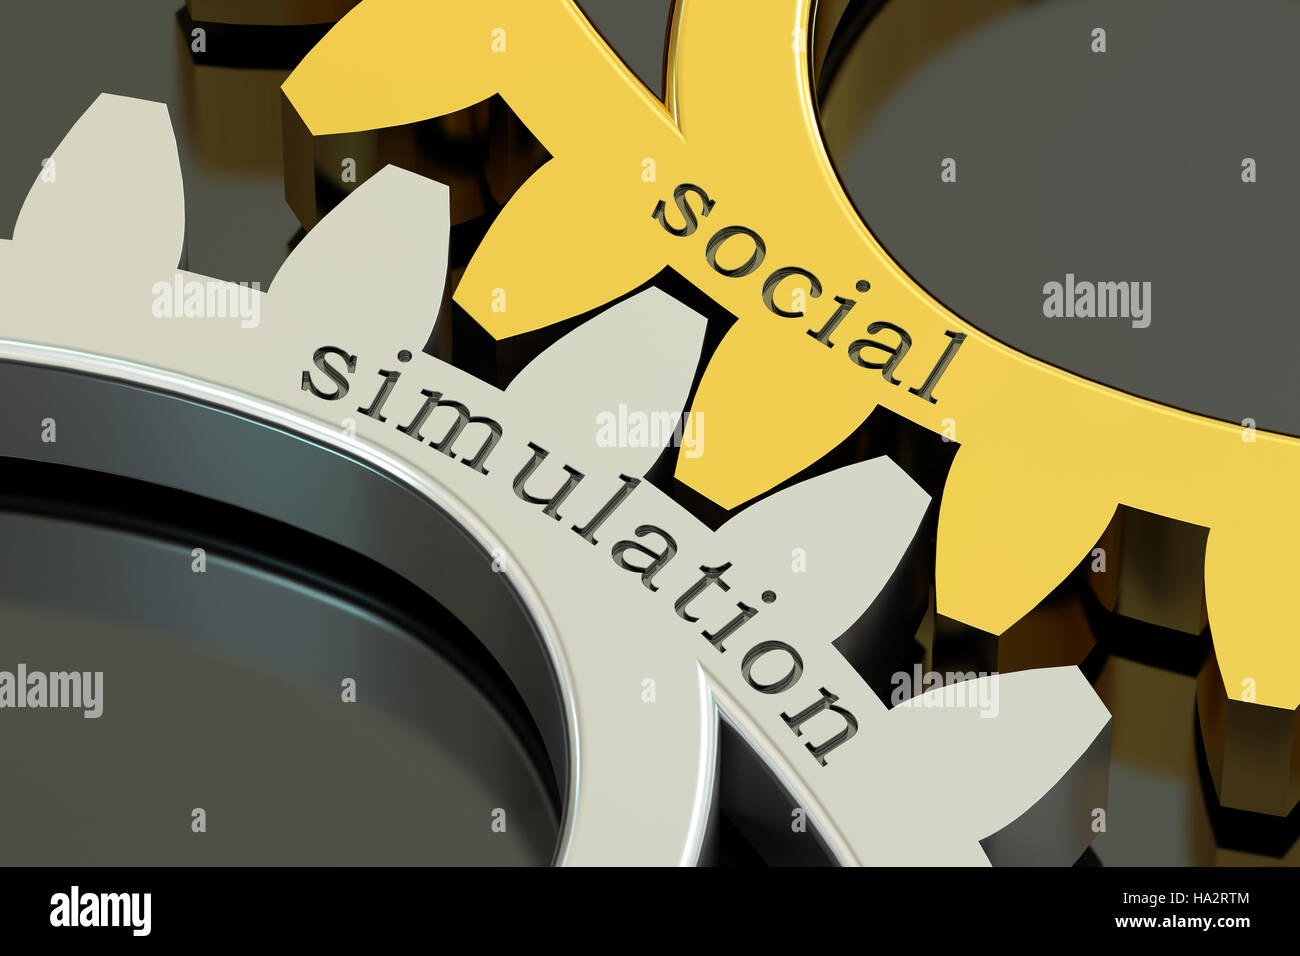 Soziale Simulation Konzept auf die Zahnräder, 3D rendering Stockfoto